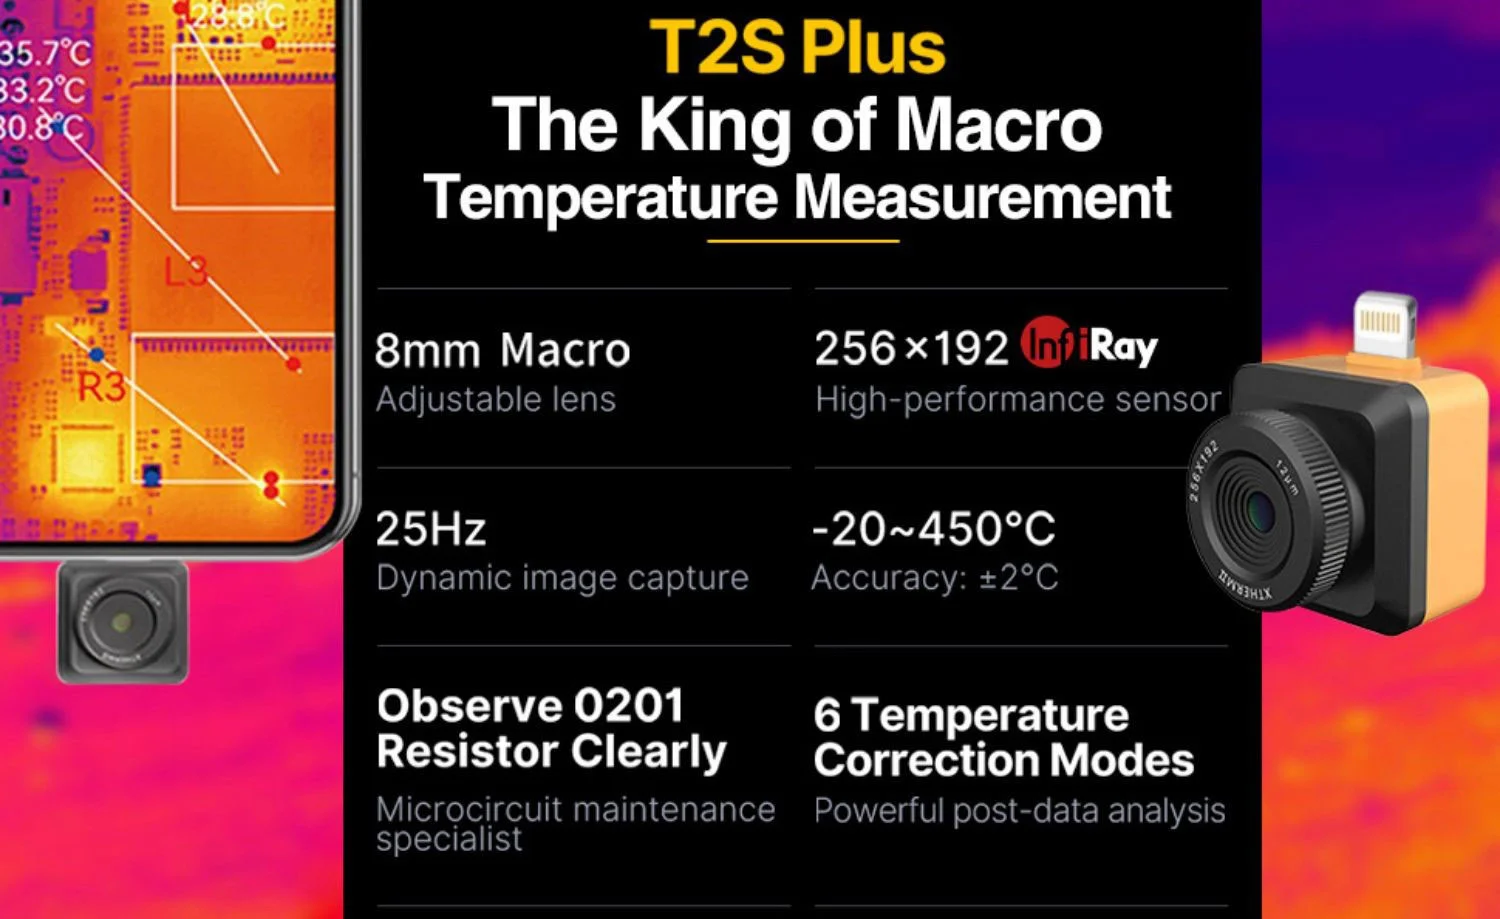 03 T2S PLUS rei da medição de temperatura macro